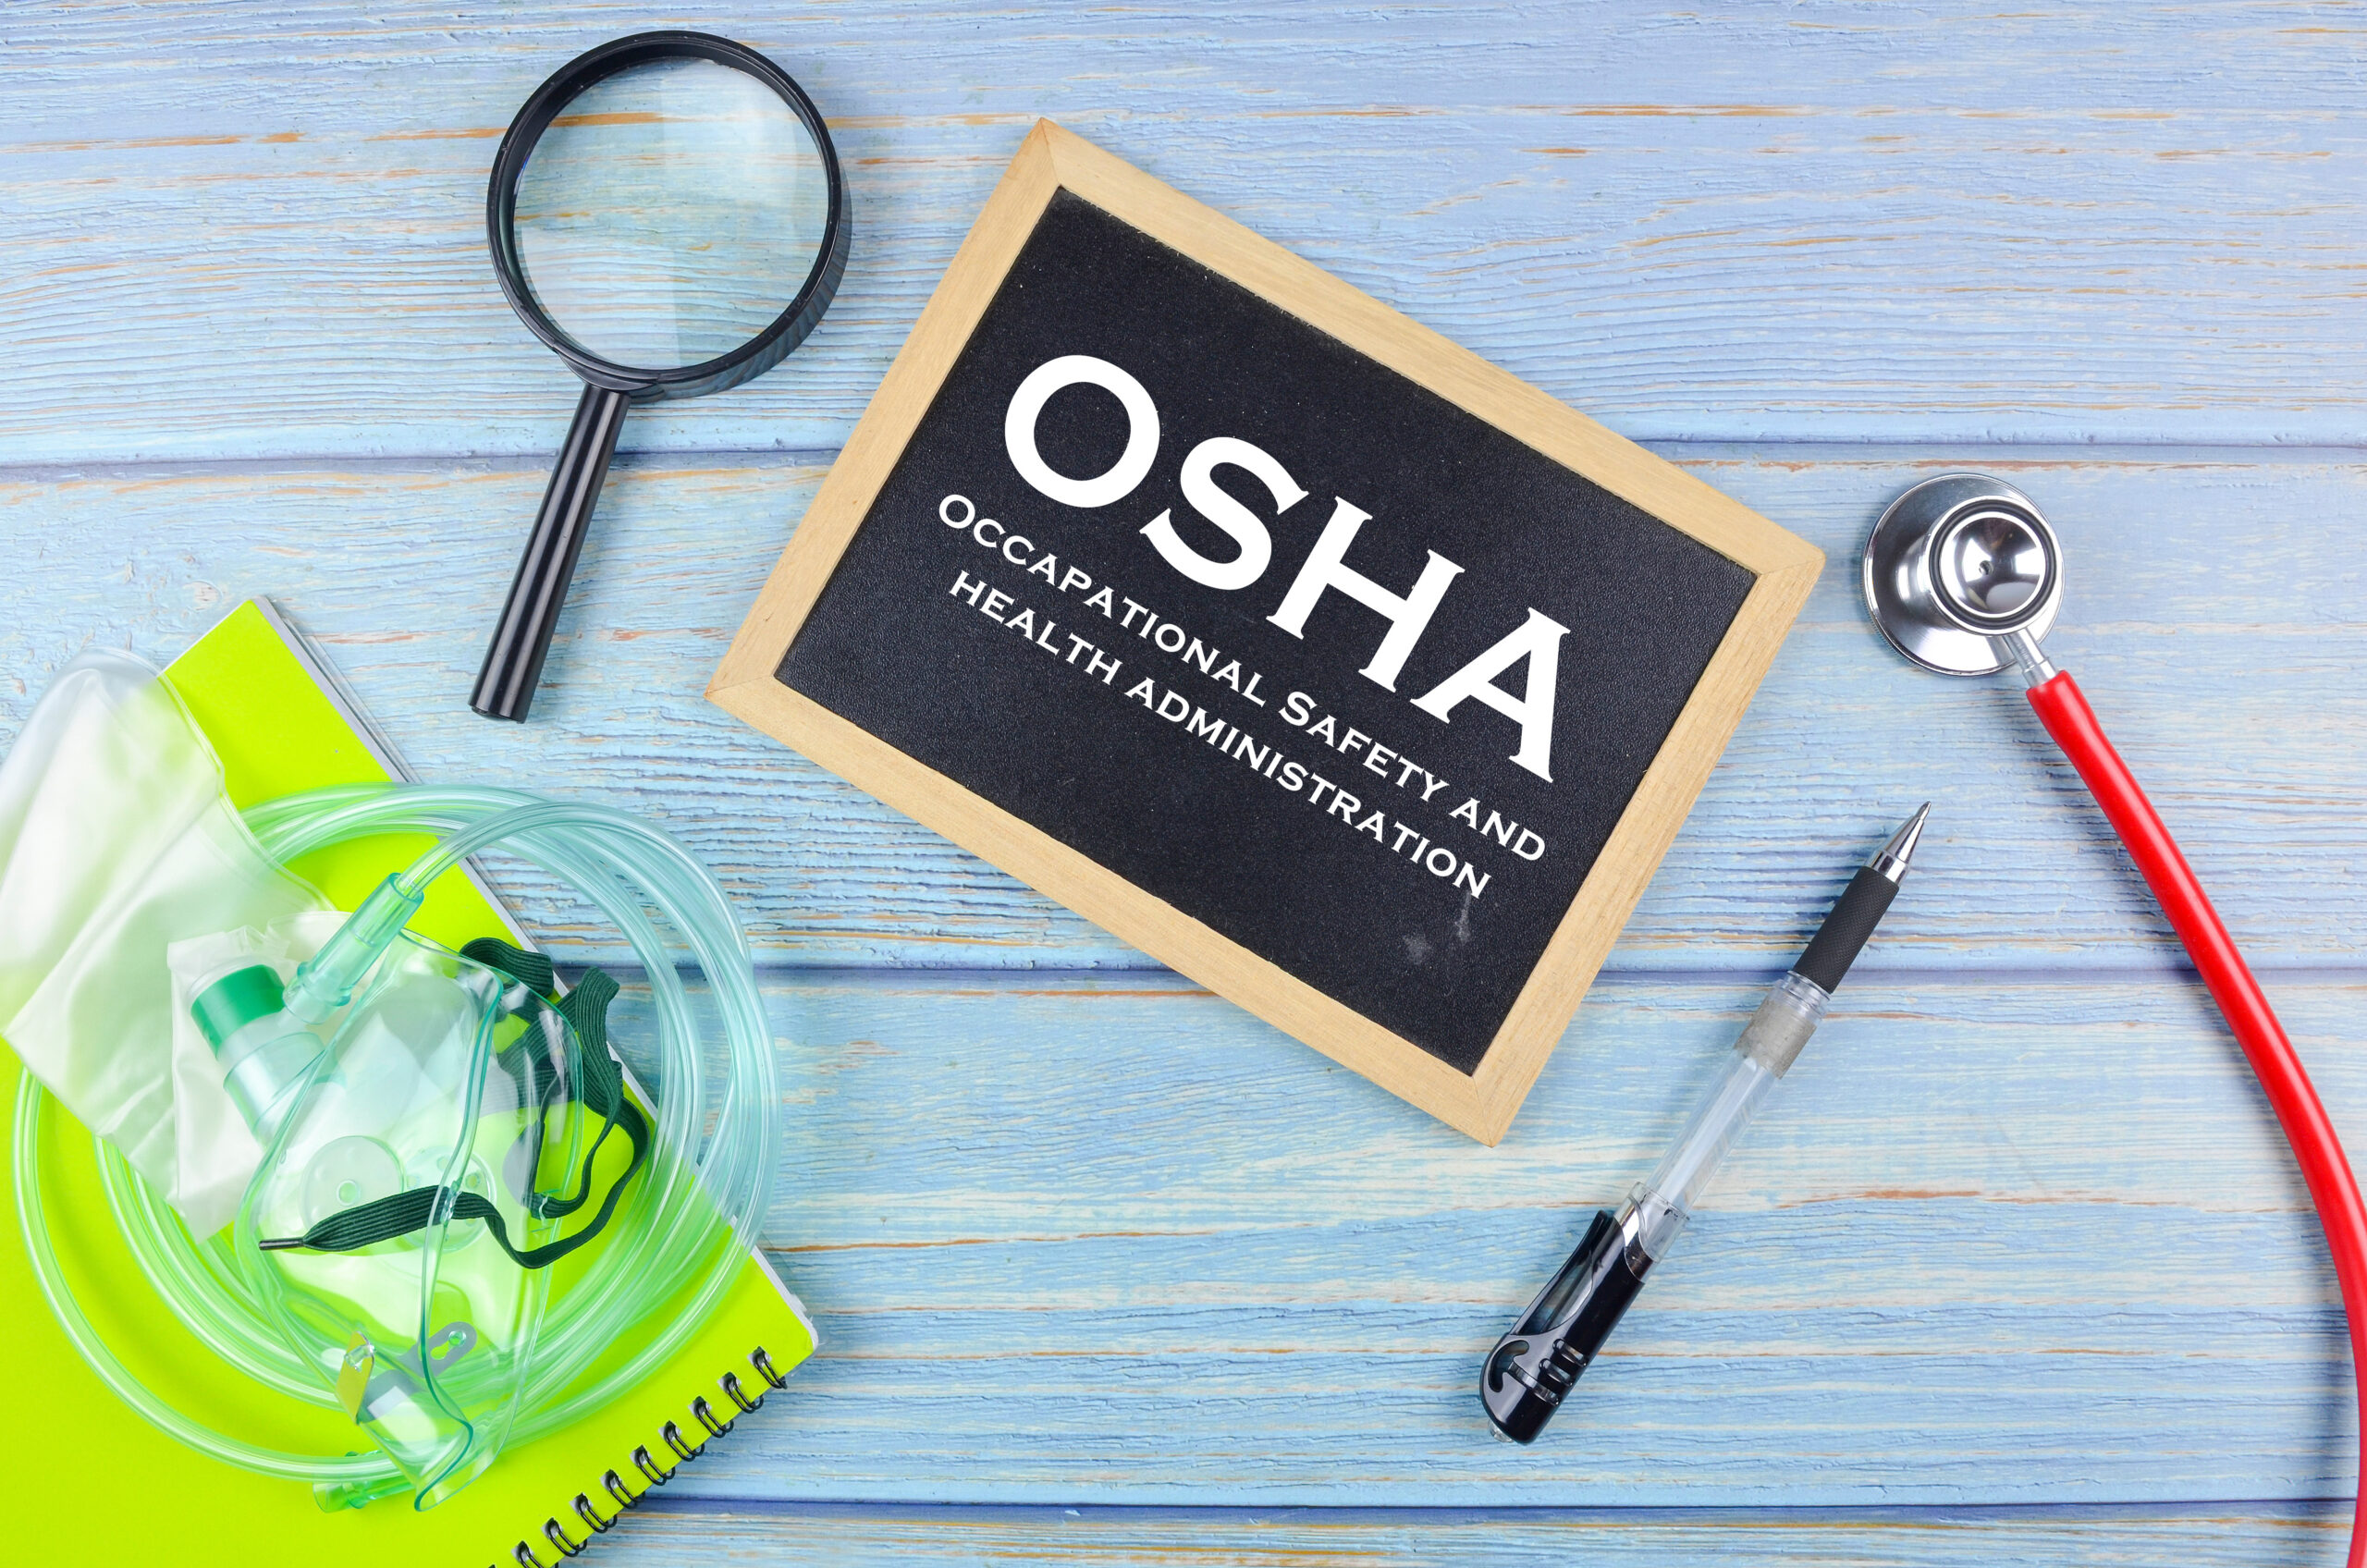 OSHA forms